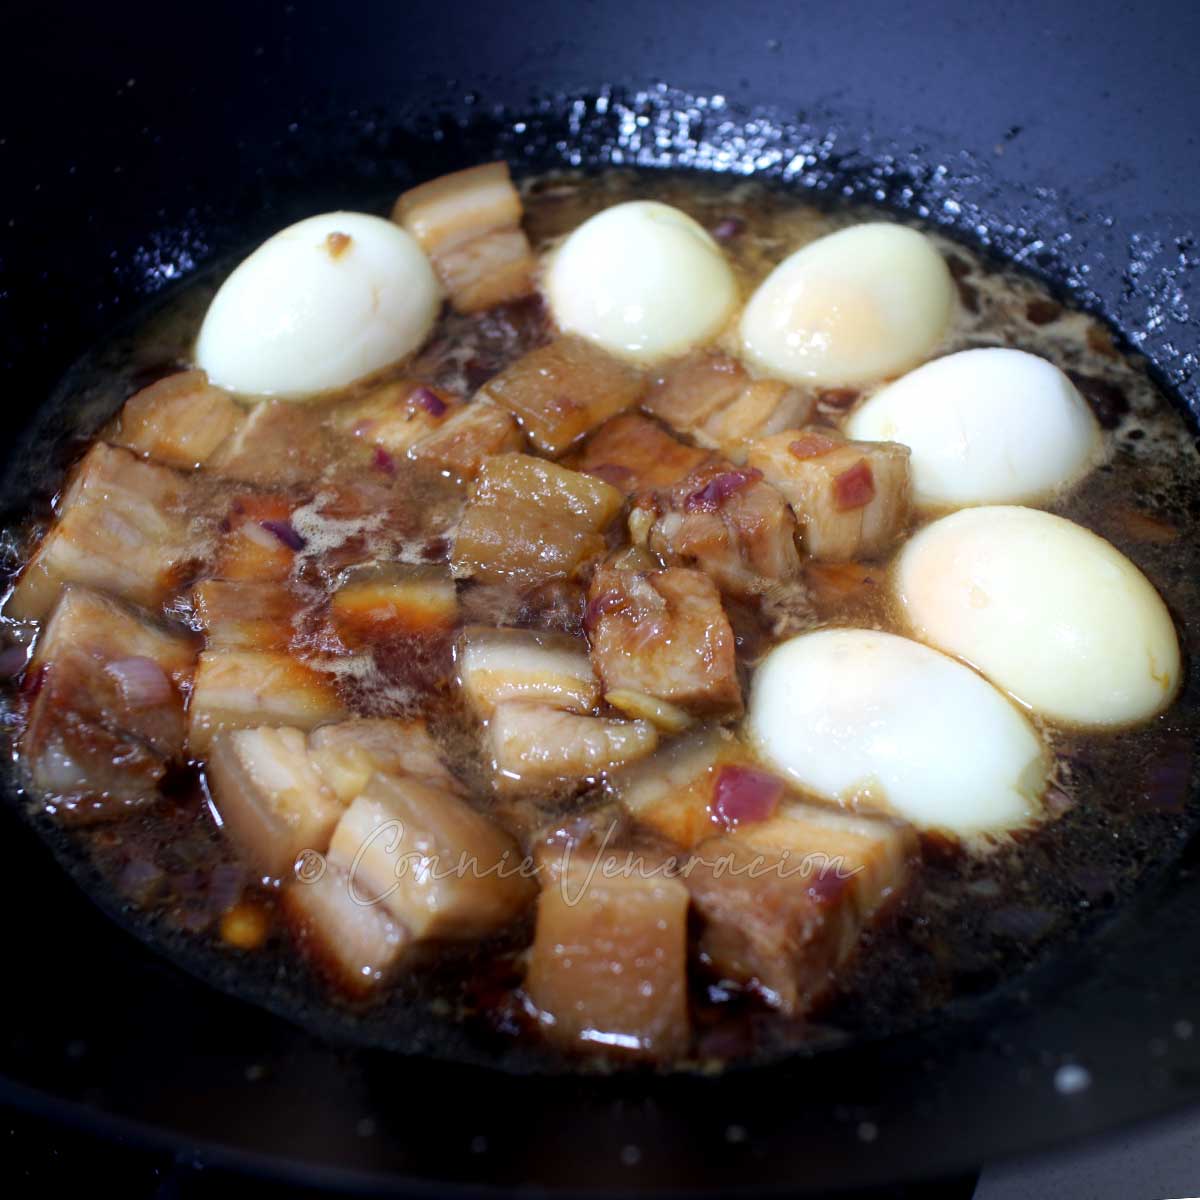 Adding hardboiled eggs to pork